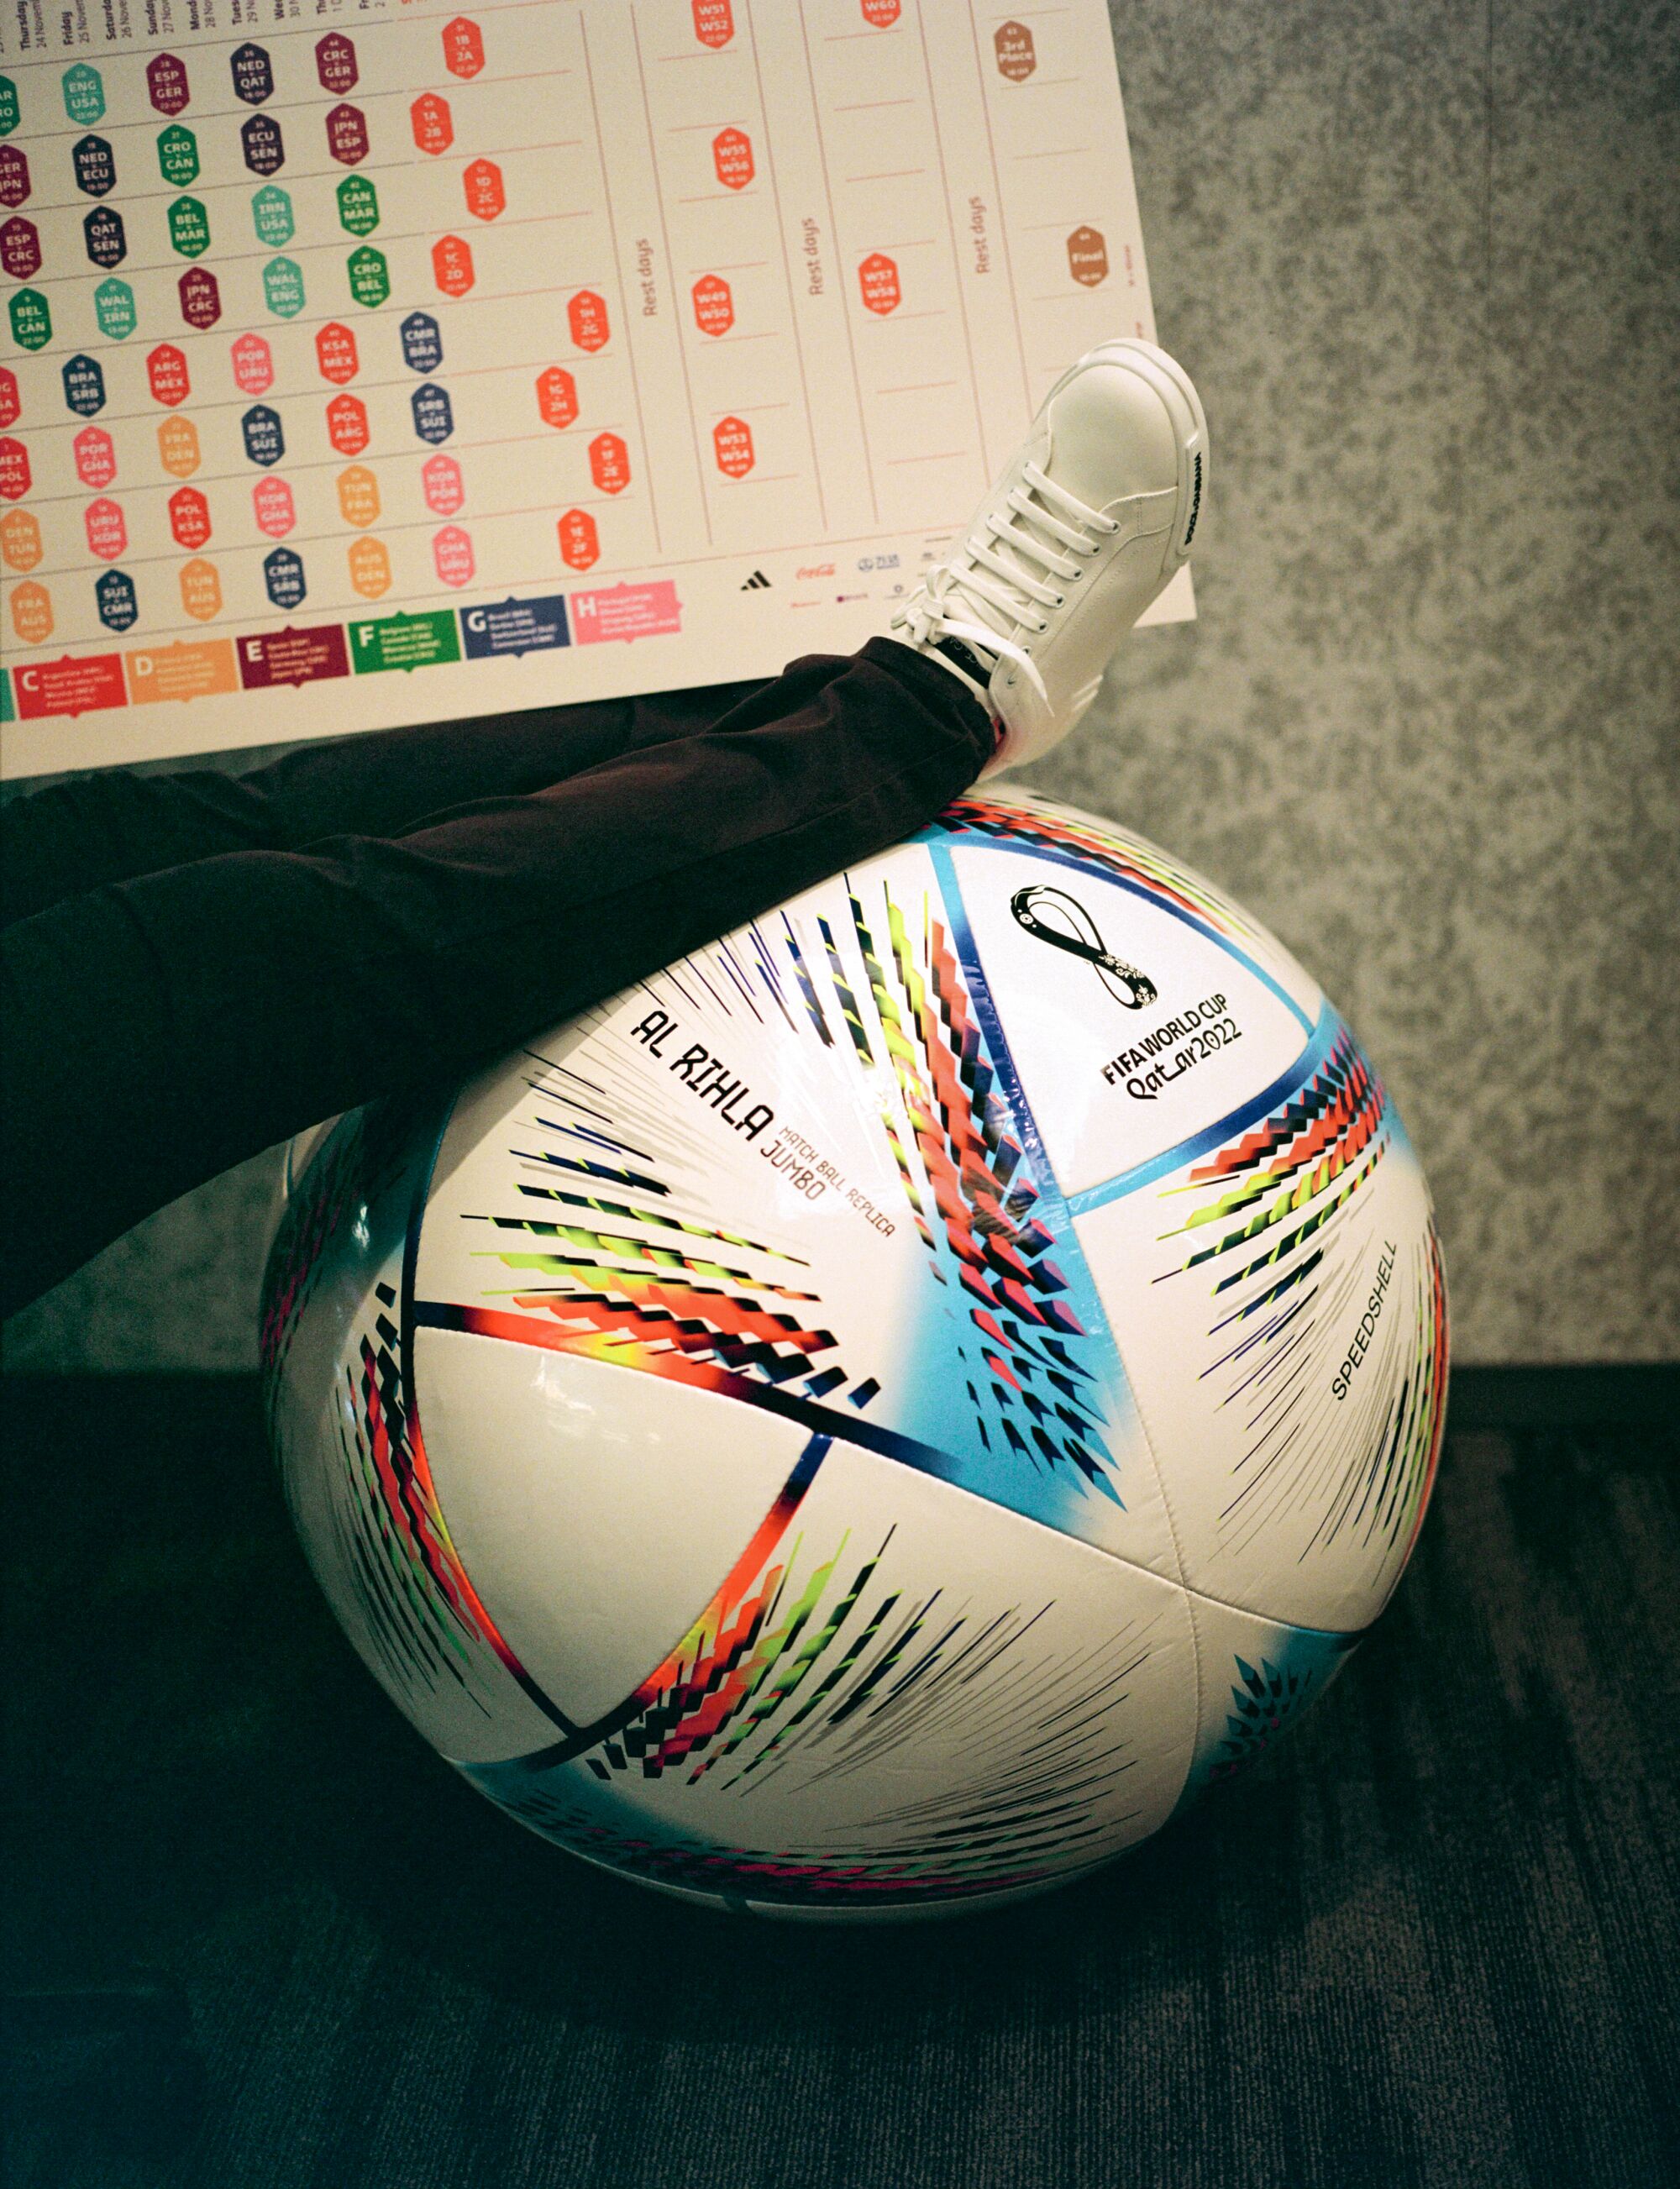 Un hombre apoya una pierna en un balón de futbol de la Copa Mundial de la FIFA.